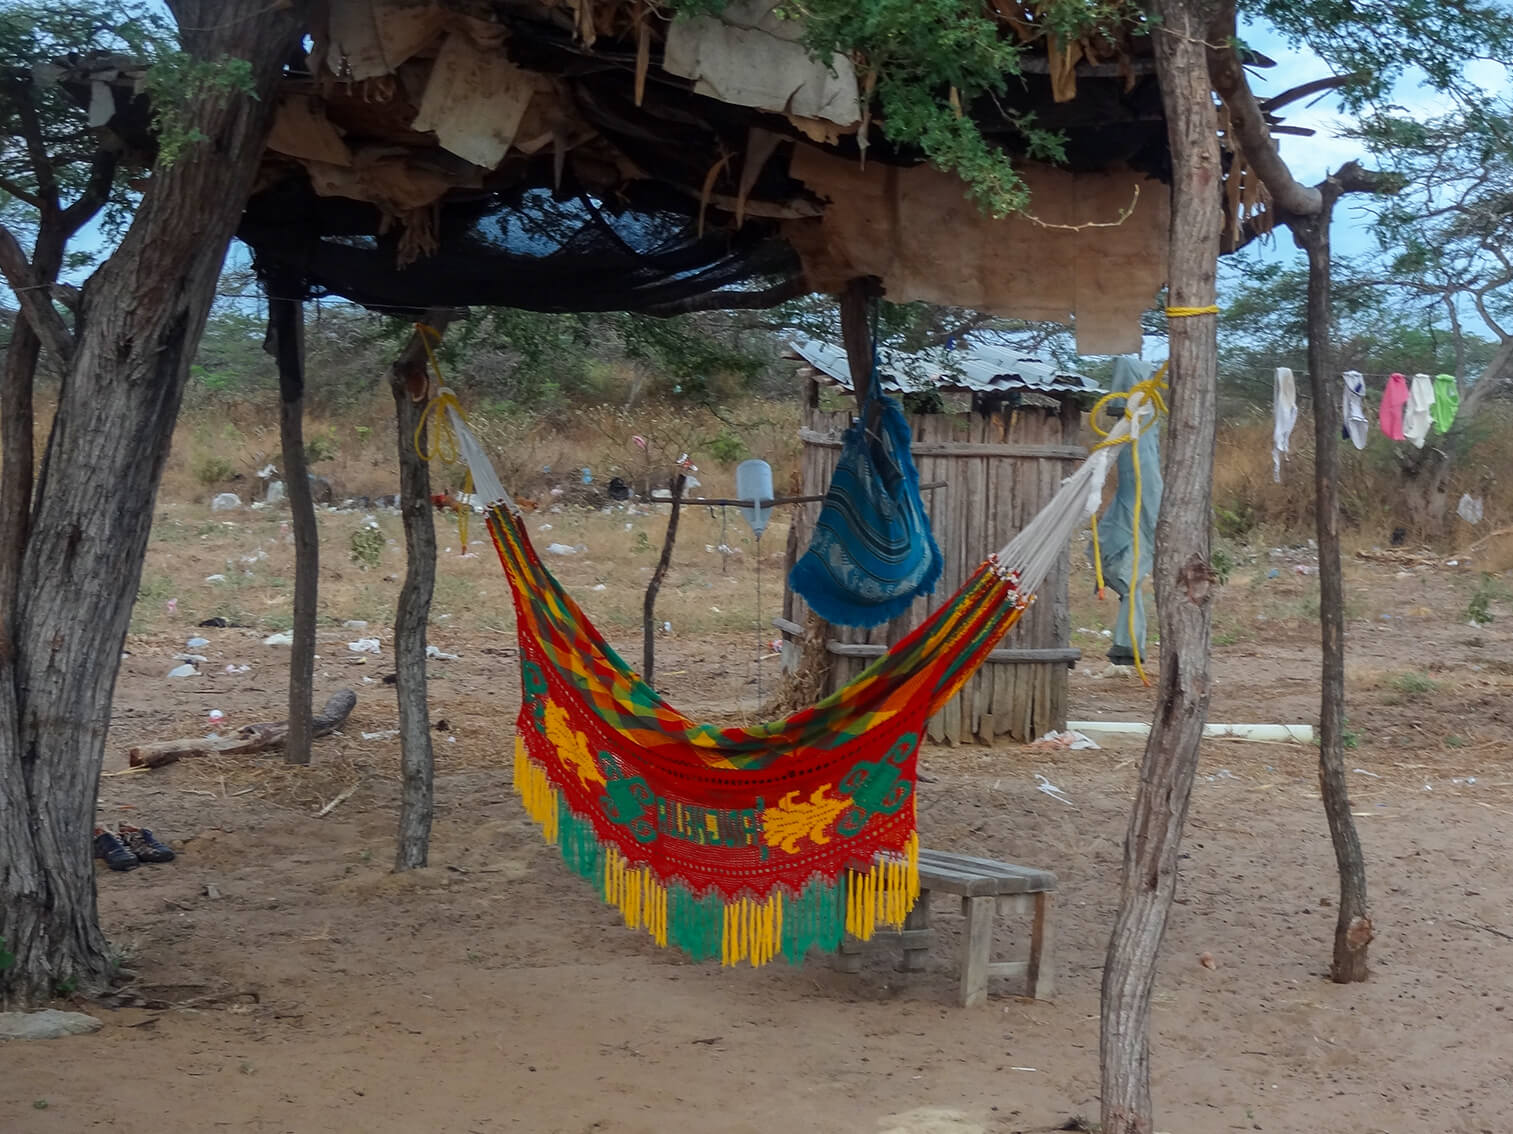 En un rancho wayuu cuelga un chinchorro. El viento trae bolsas de plástico que se enredan en las plantas del desierto.